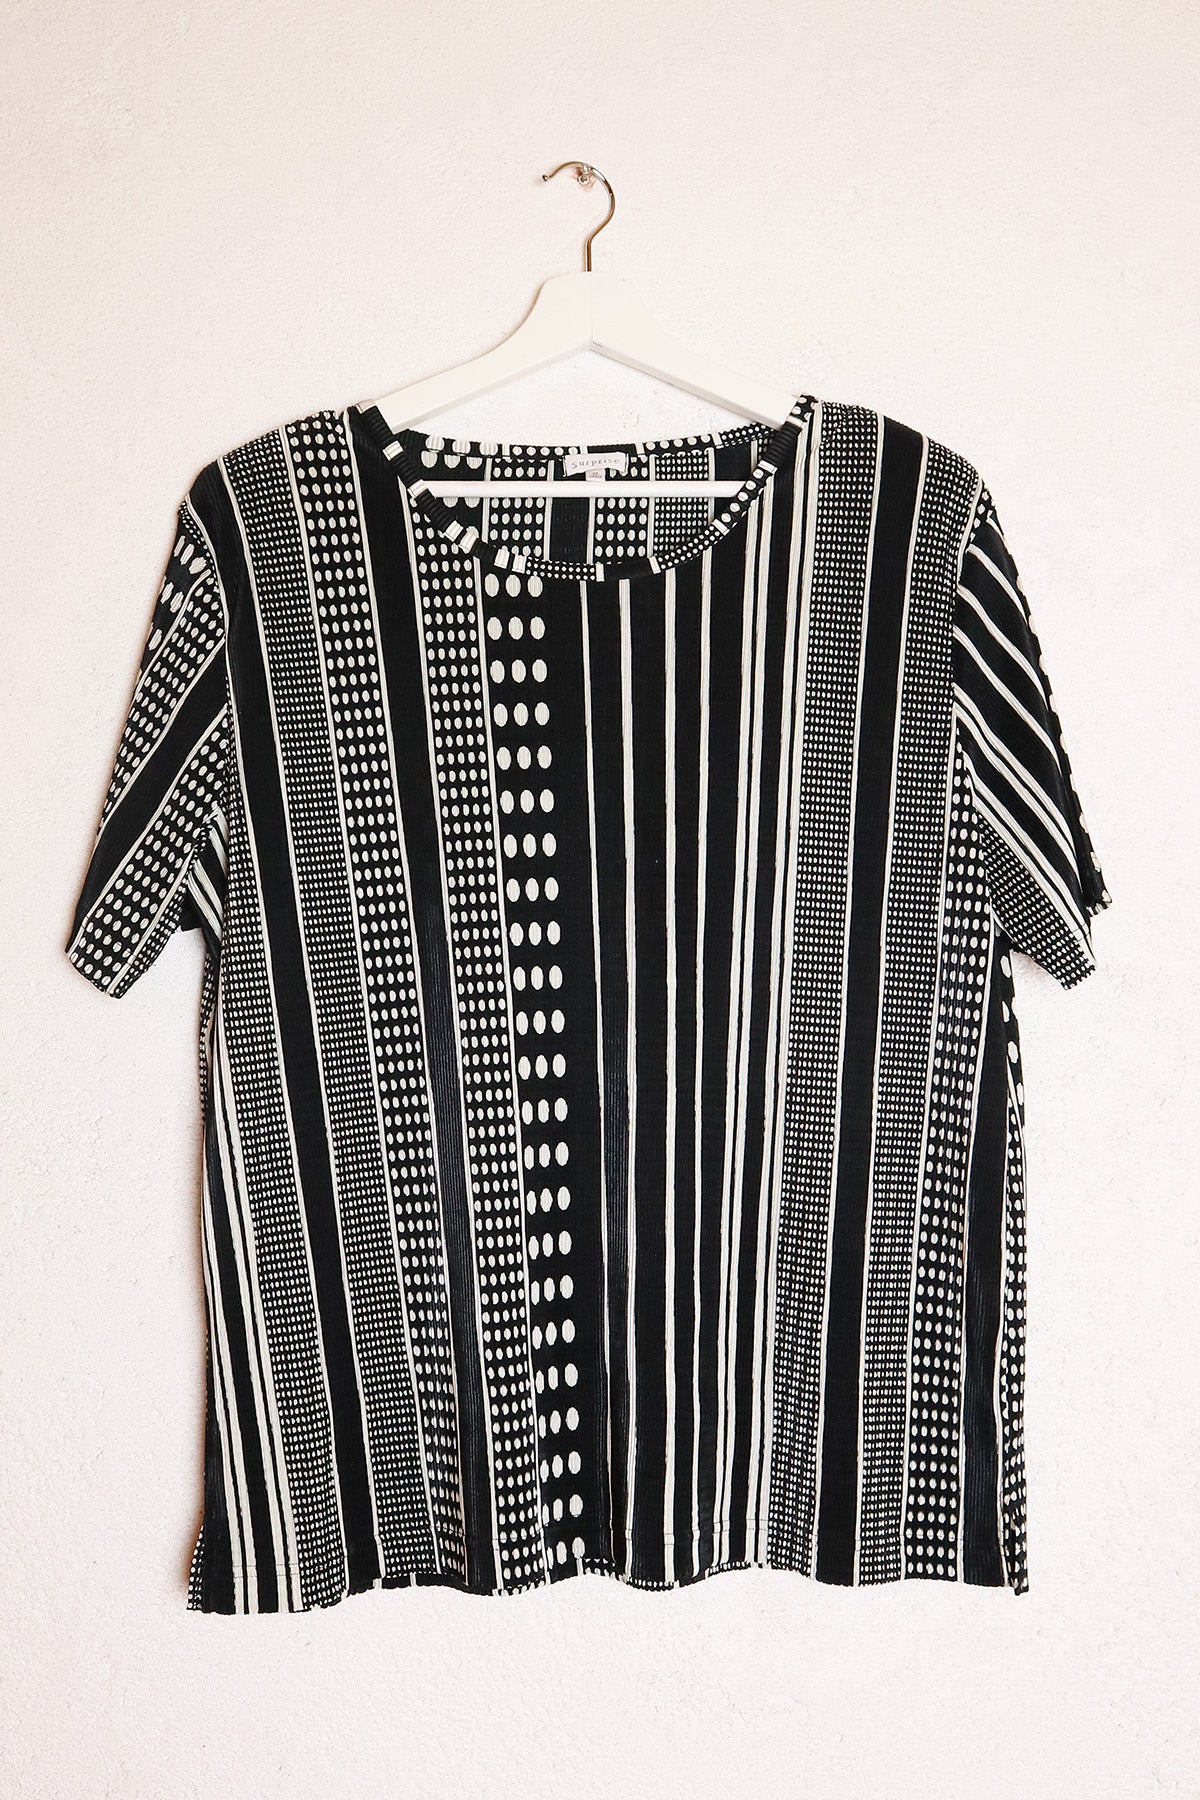 T-Shirt Vintage Streifen und Punkte ( Gr. L/XL )